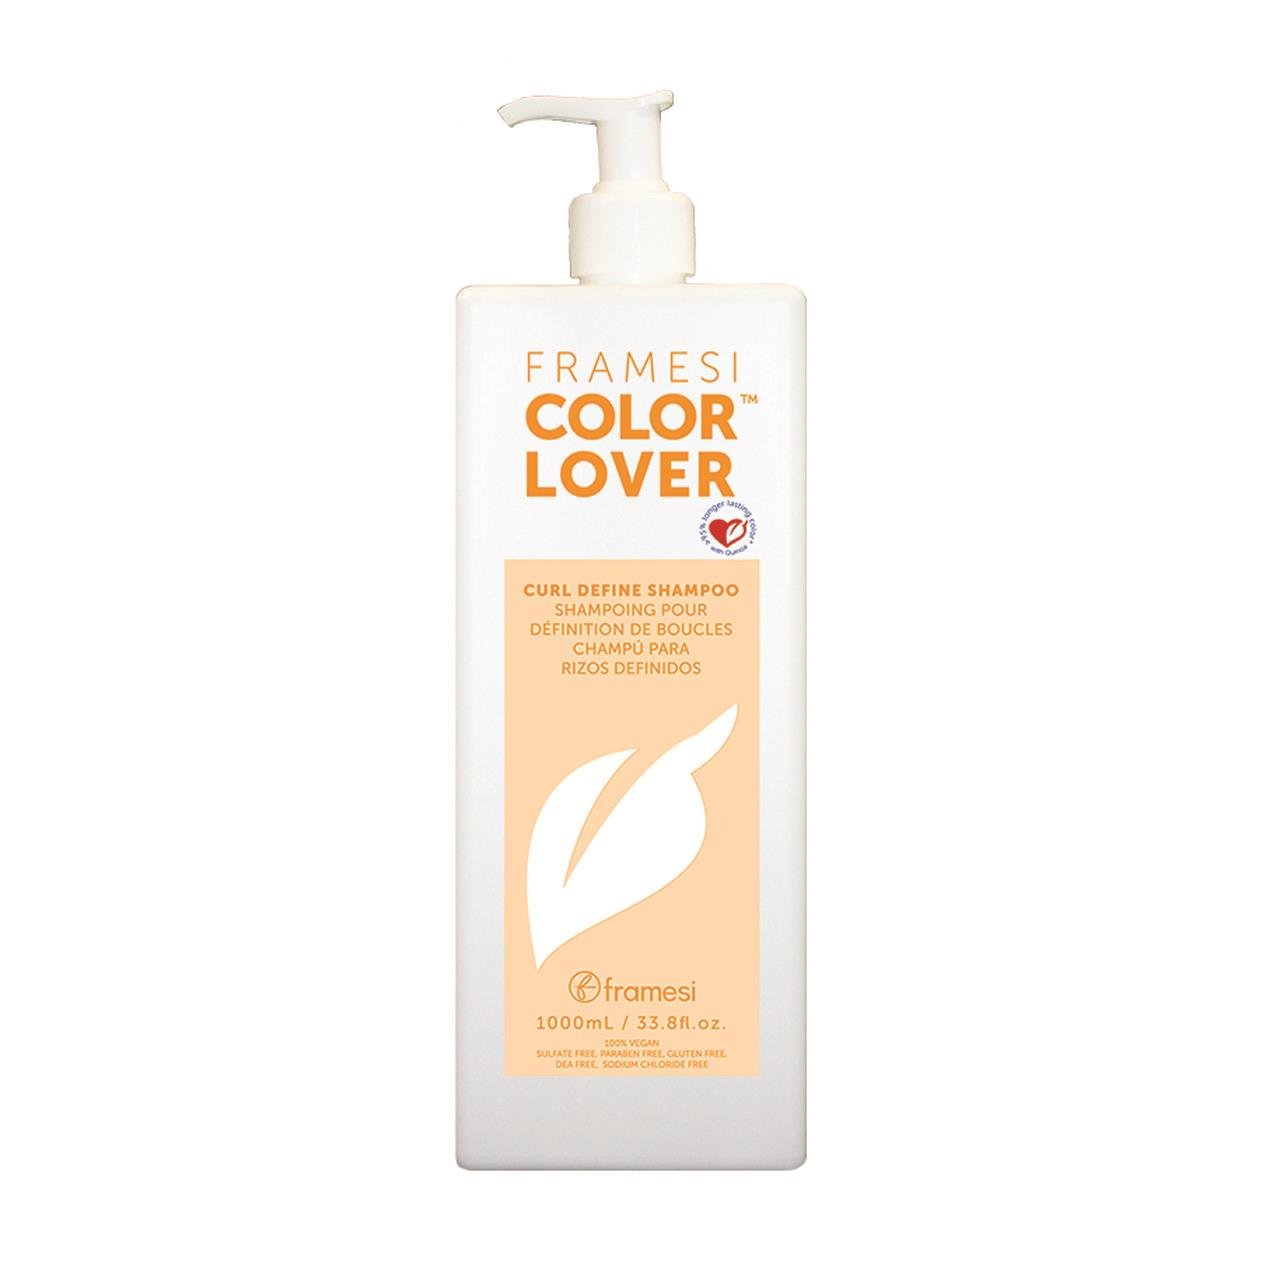 COLOR LOVER: Curl Define Shampoo Liter